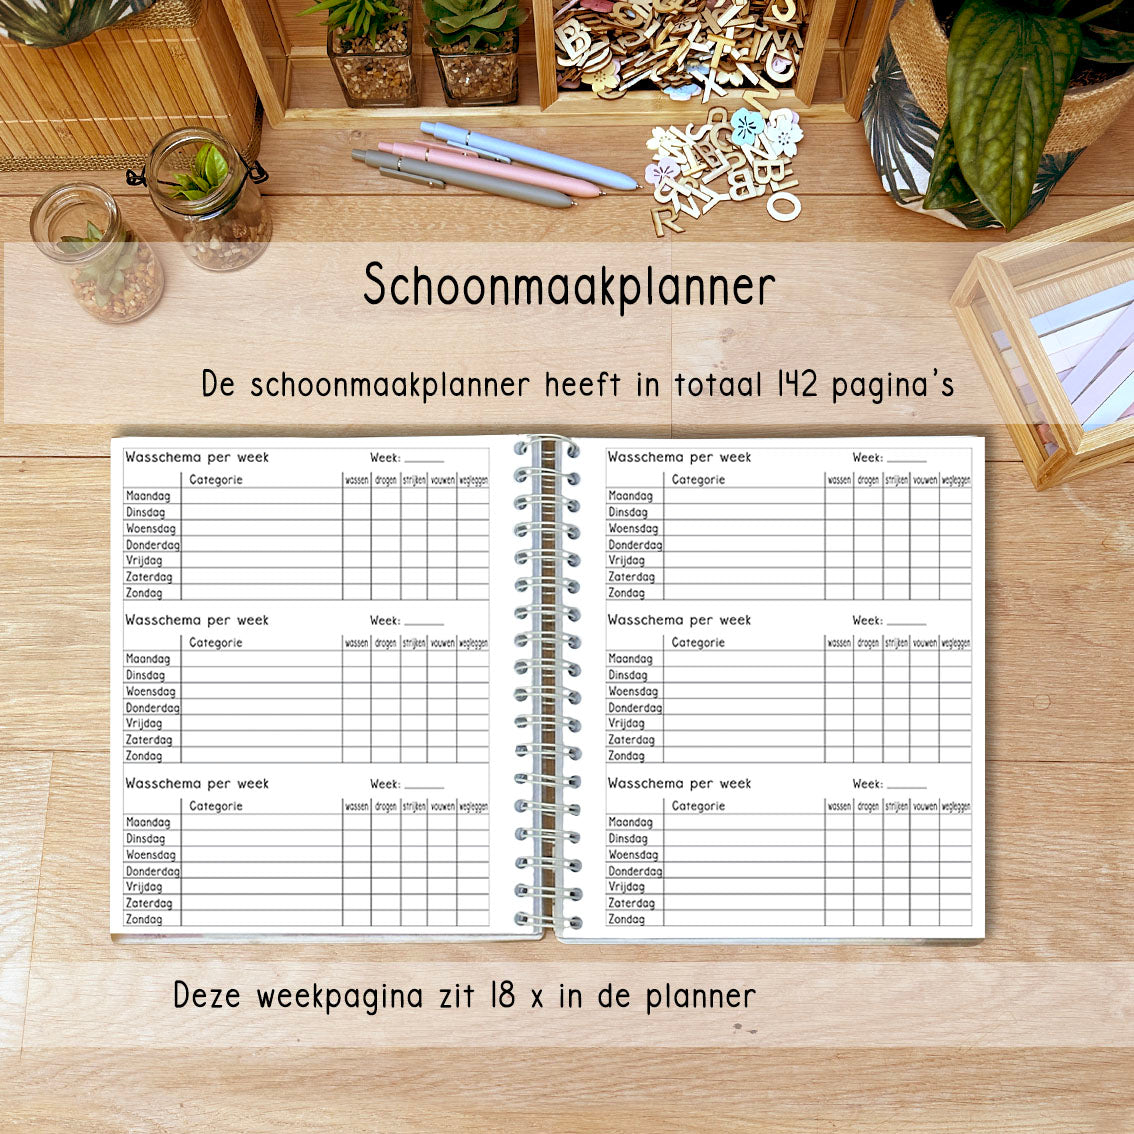 Wekelijkswasschema: Een schema voor de wekelijkse wasroutine uit de Laura Lisa Schoonmaak Planner, inclusief taken en dagen van de week.